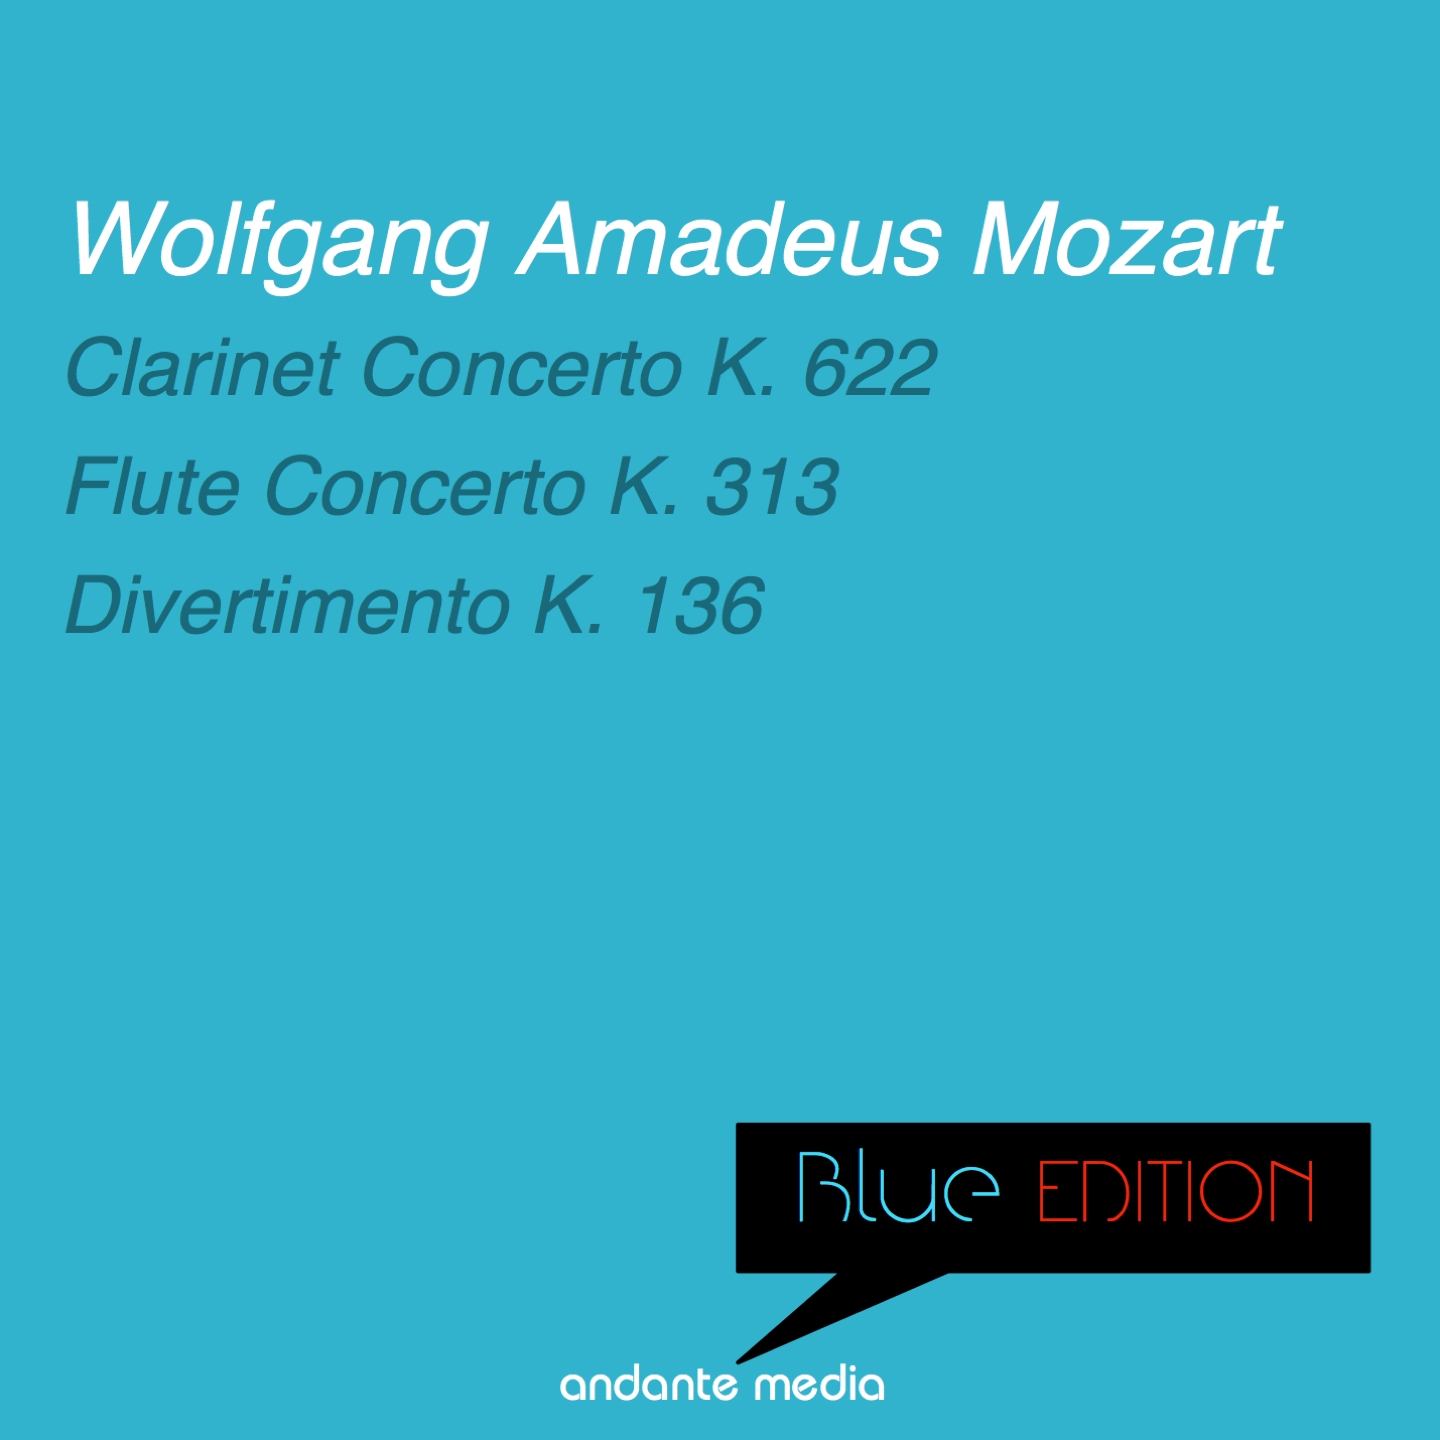 Flute Concerto in G Major, K. 313: II. Adagio ma non troppo